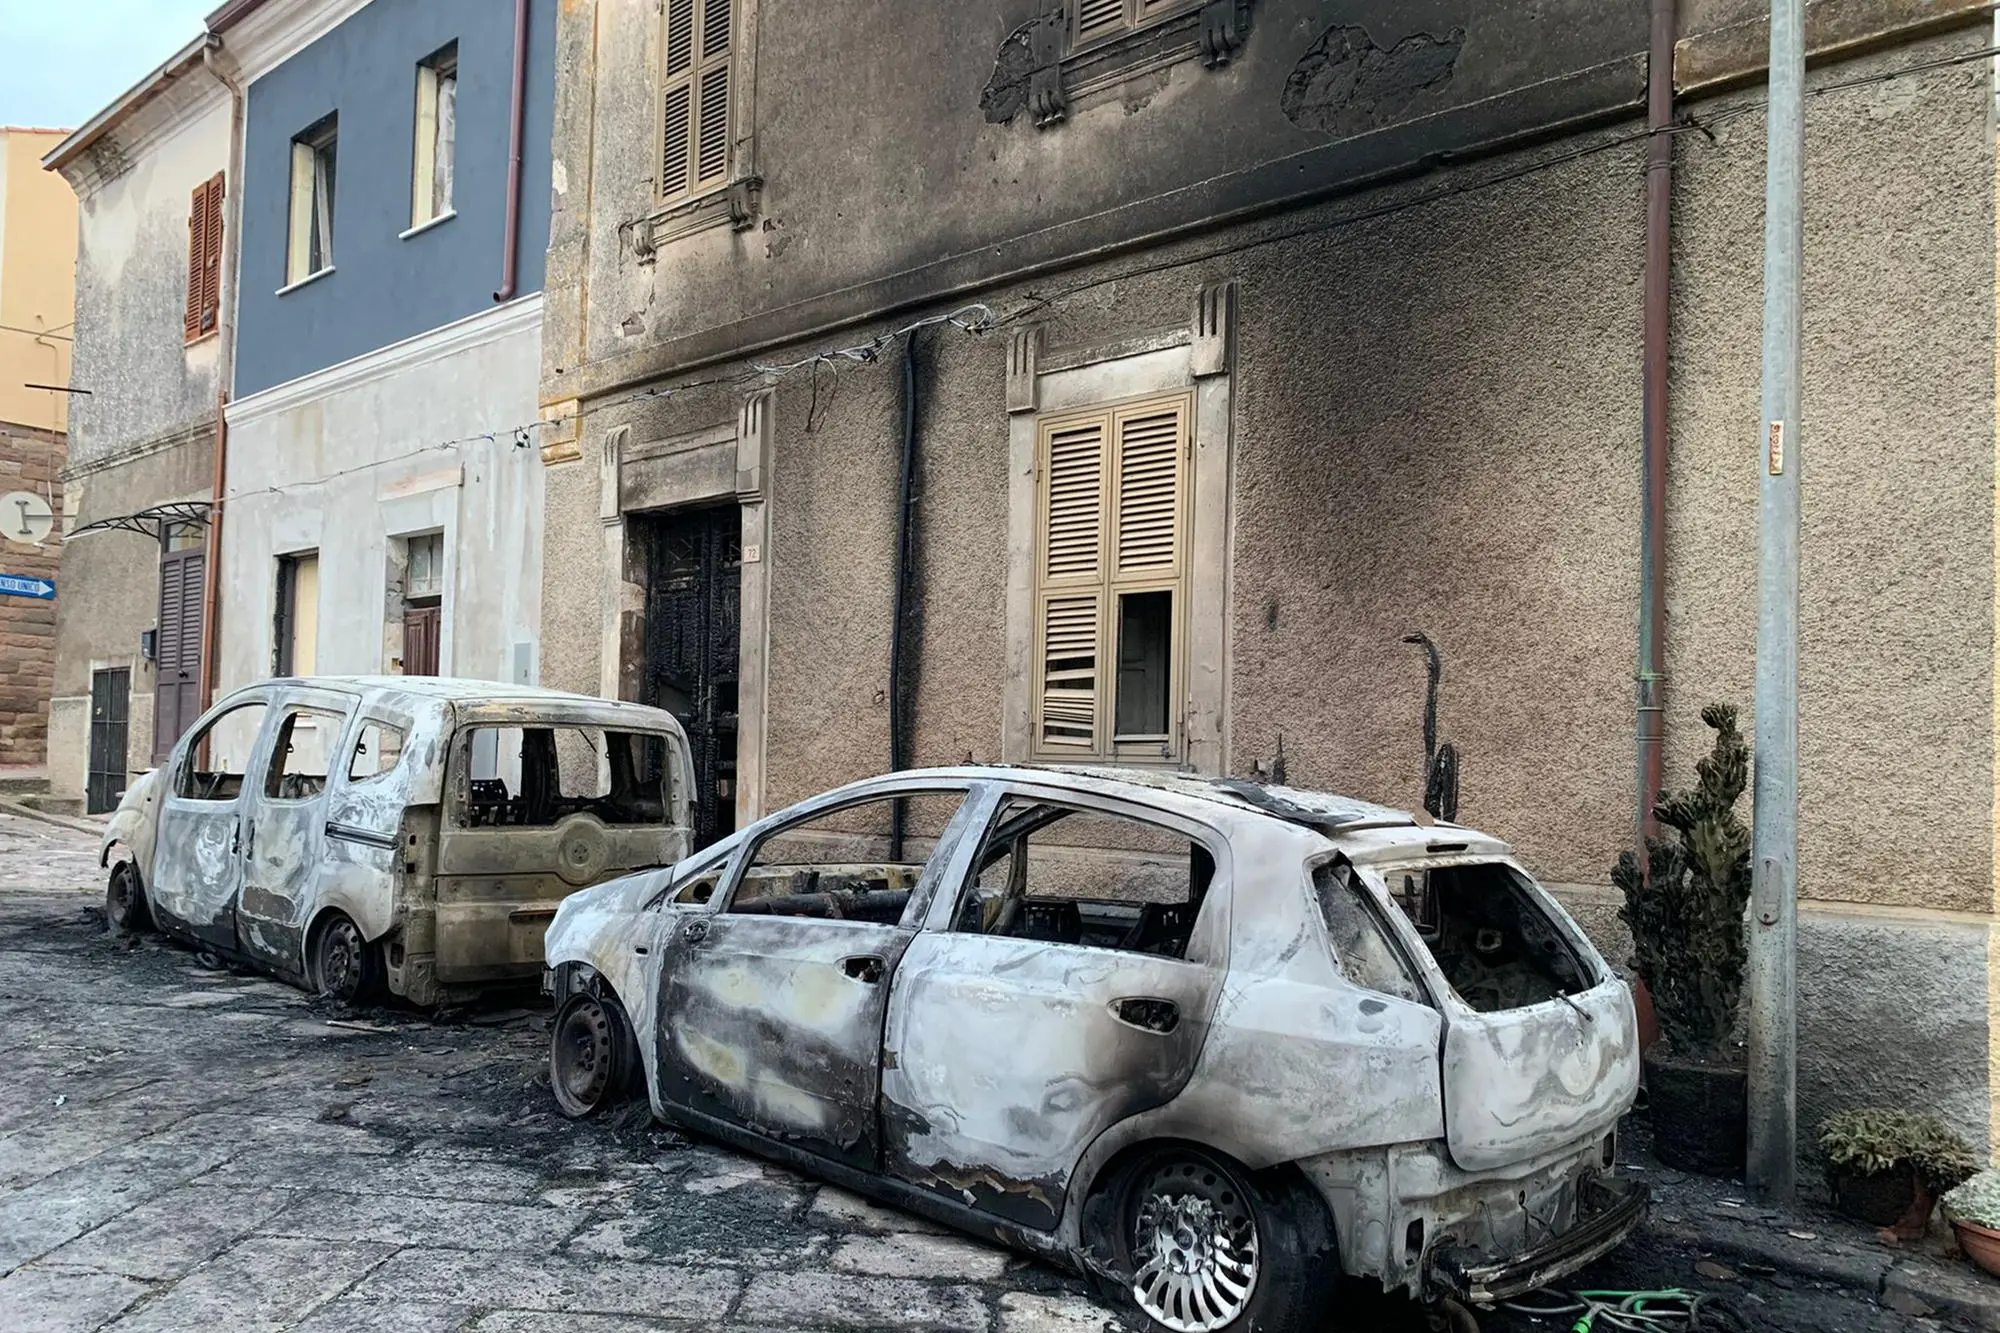 Le auto incendiate e la facciata danneggiata (Foto: Floris)